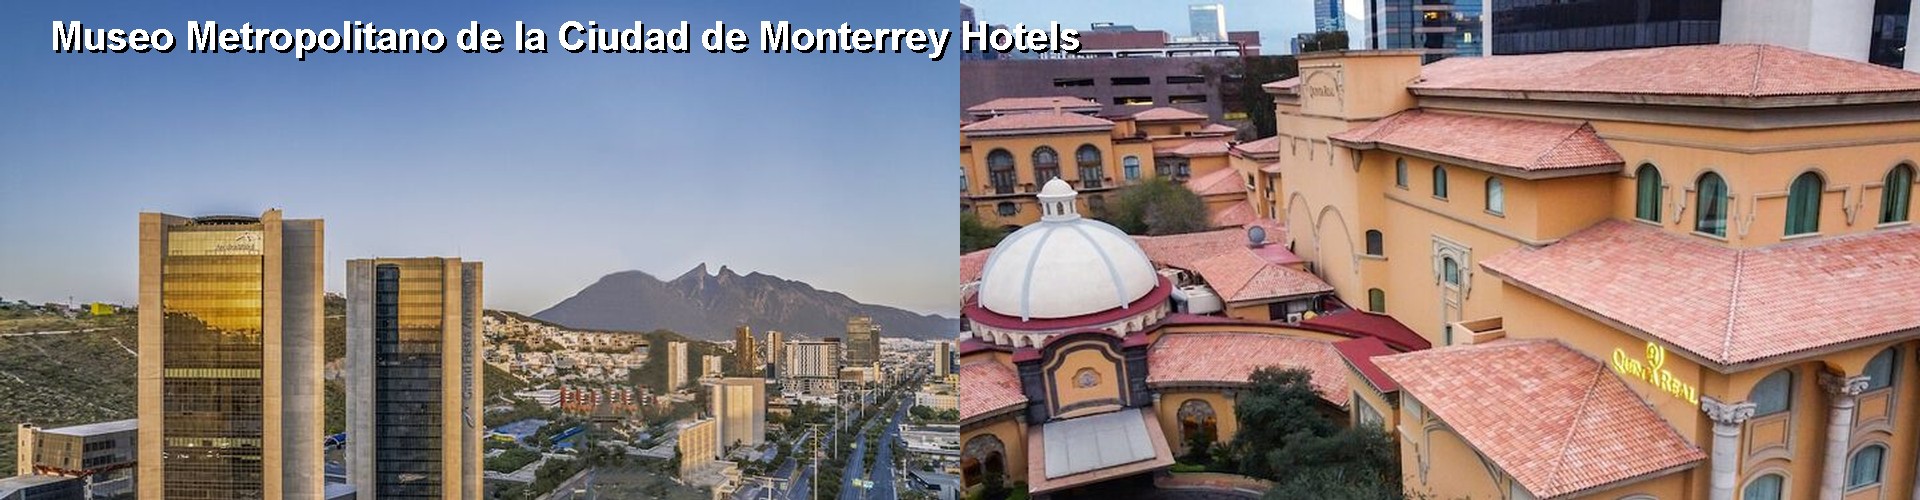 5 Best Hotels near Museo Metropolitano de la Ciudad de Monterrey